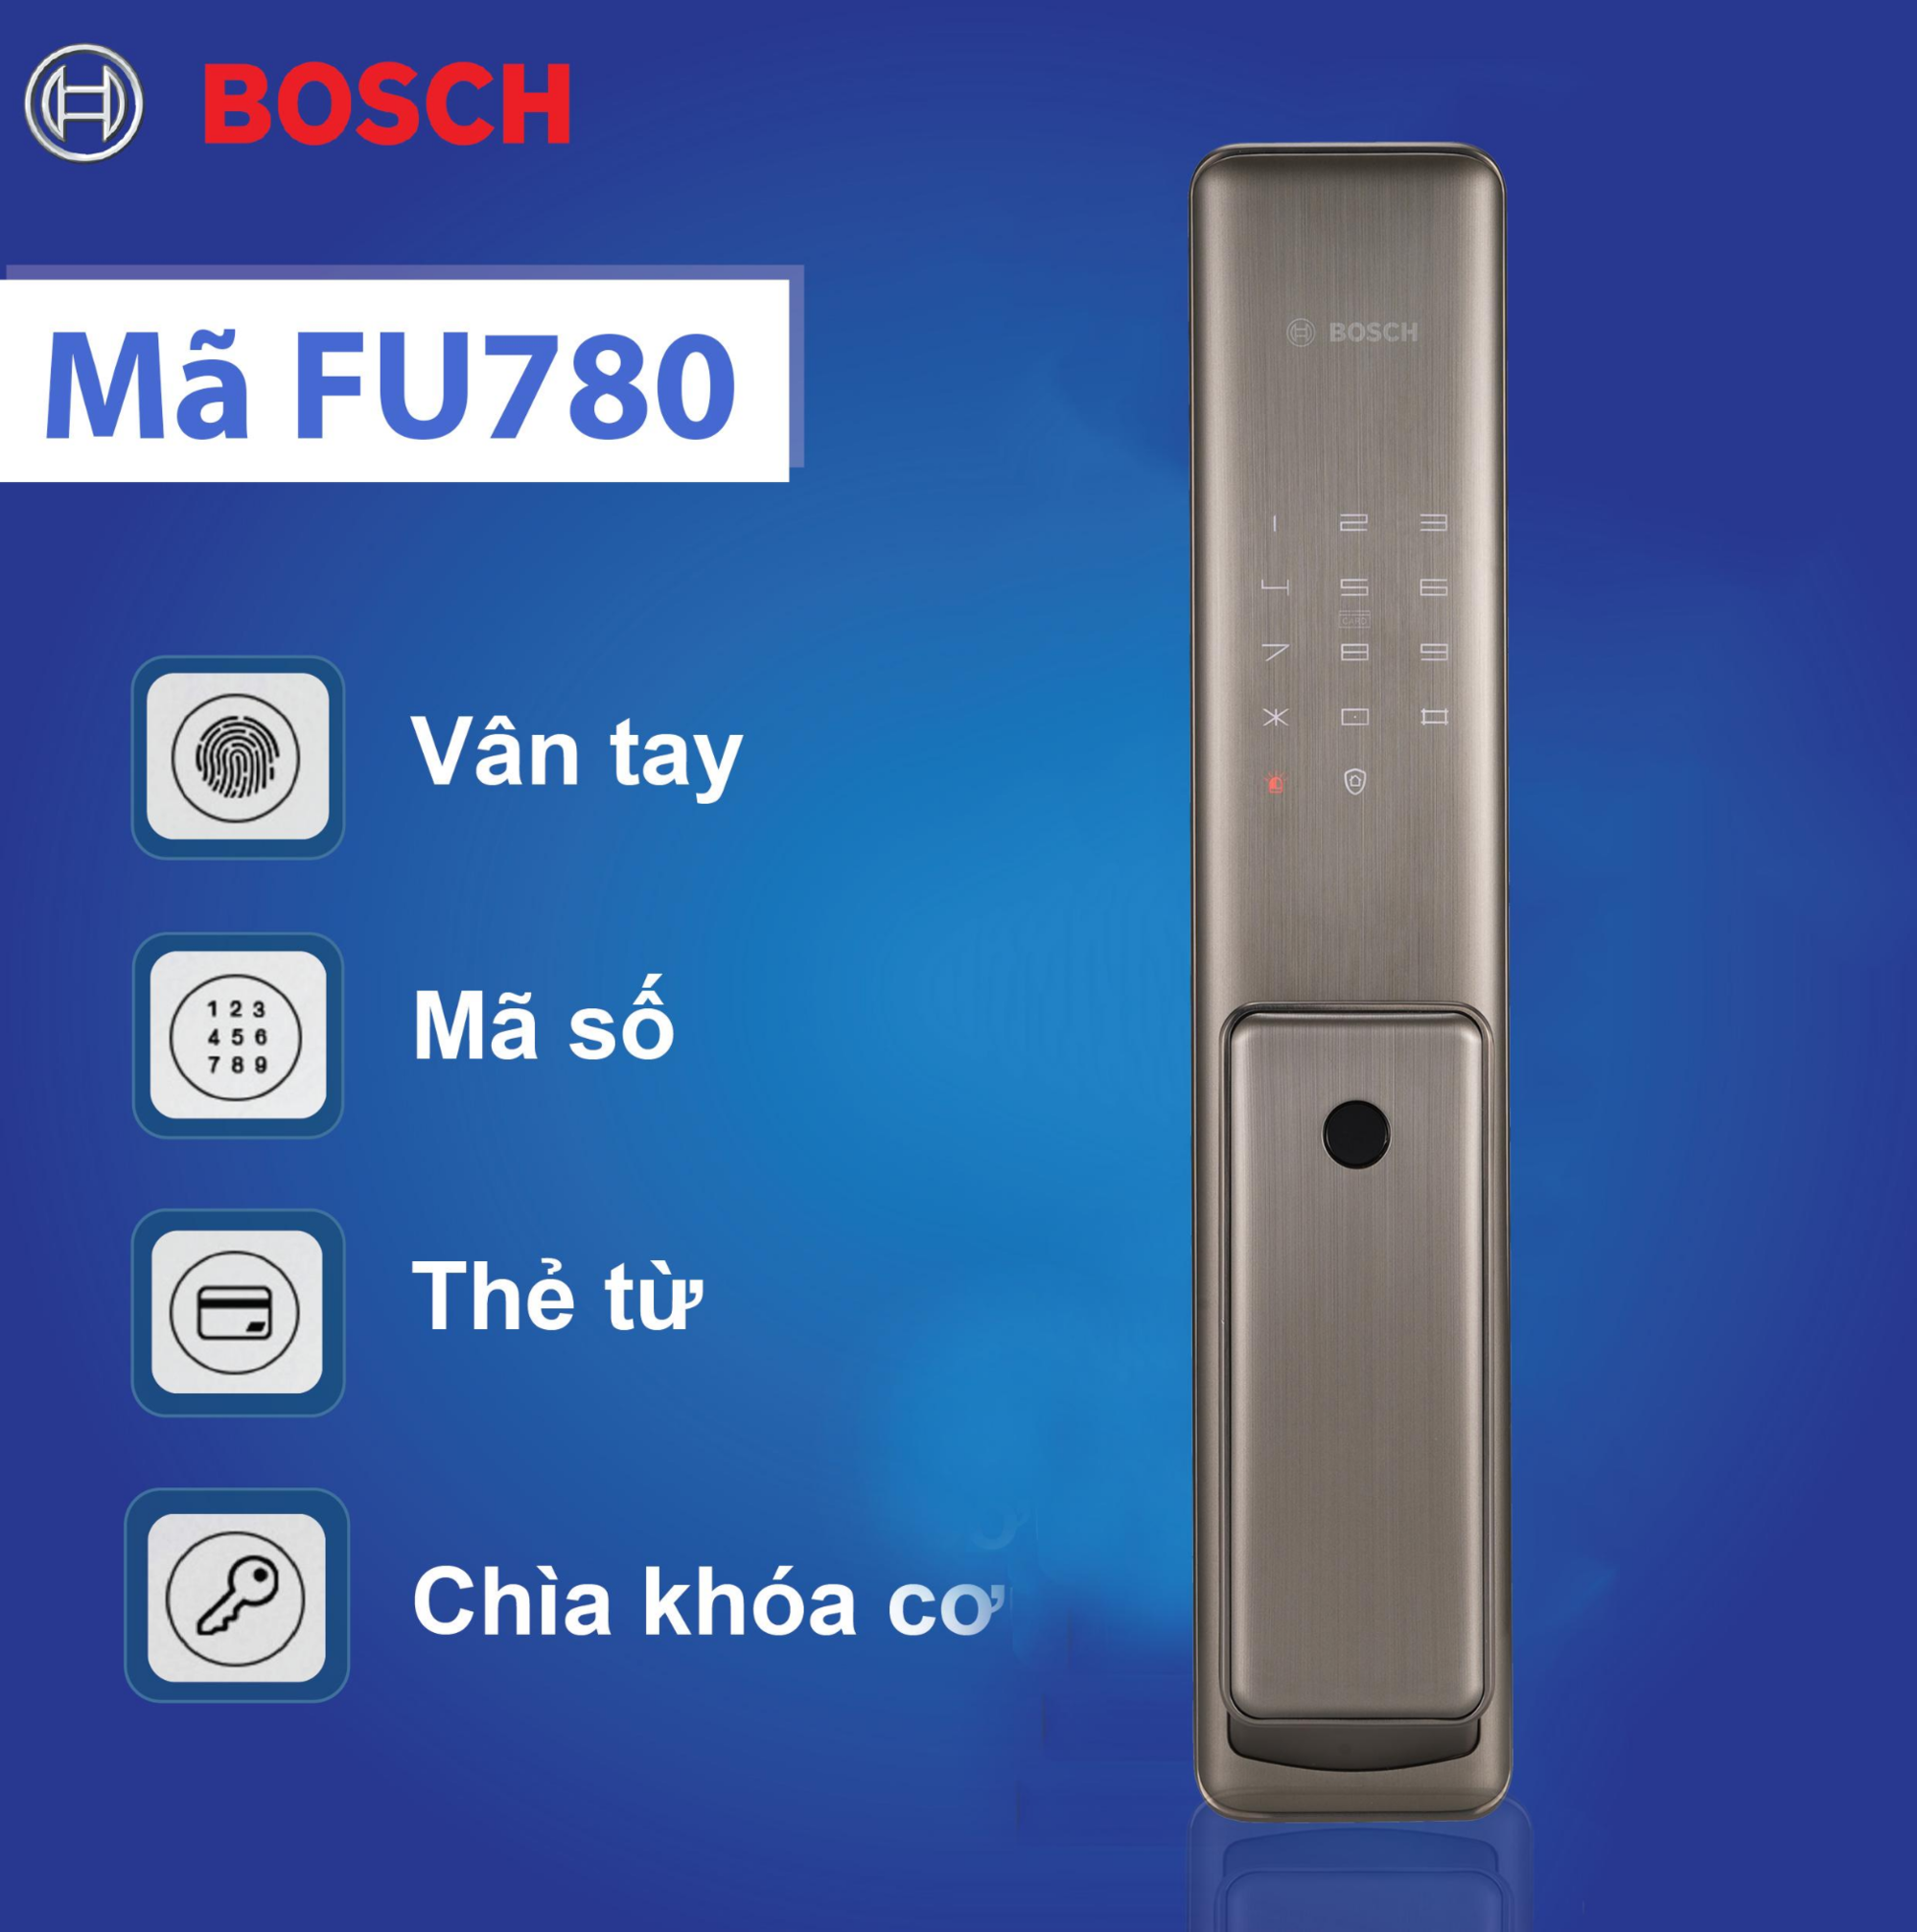  Bosch FU780 tích hợp nhiều chức năng mở cửa